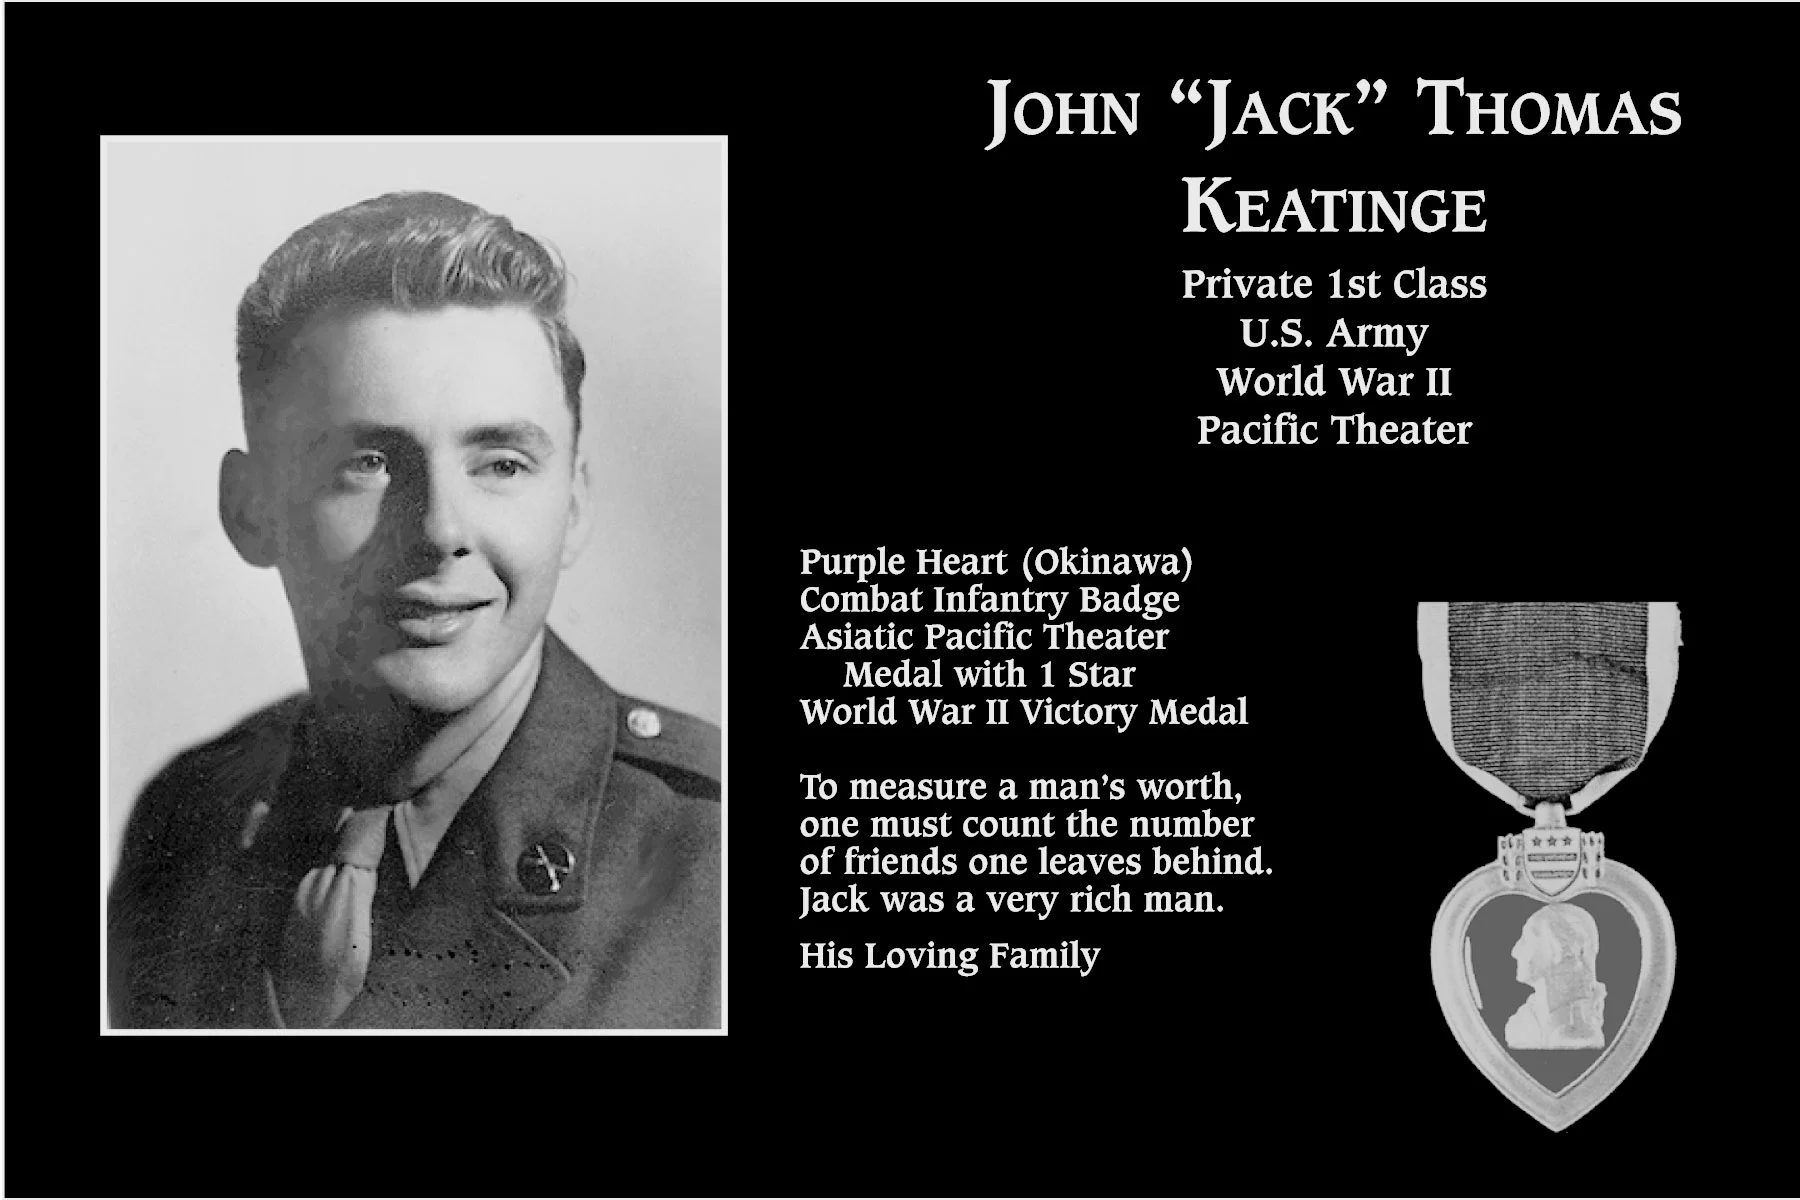 John Thomas “Jack” Keatinge